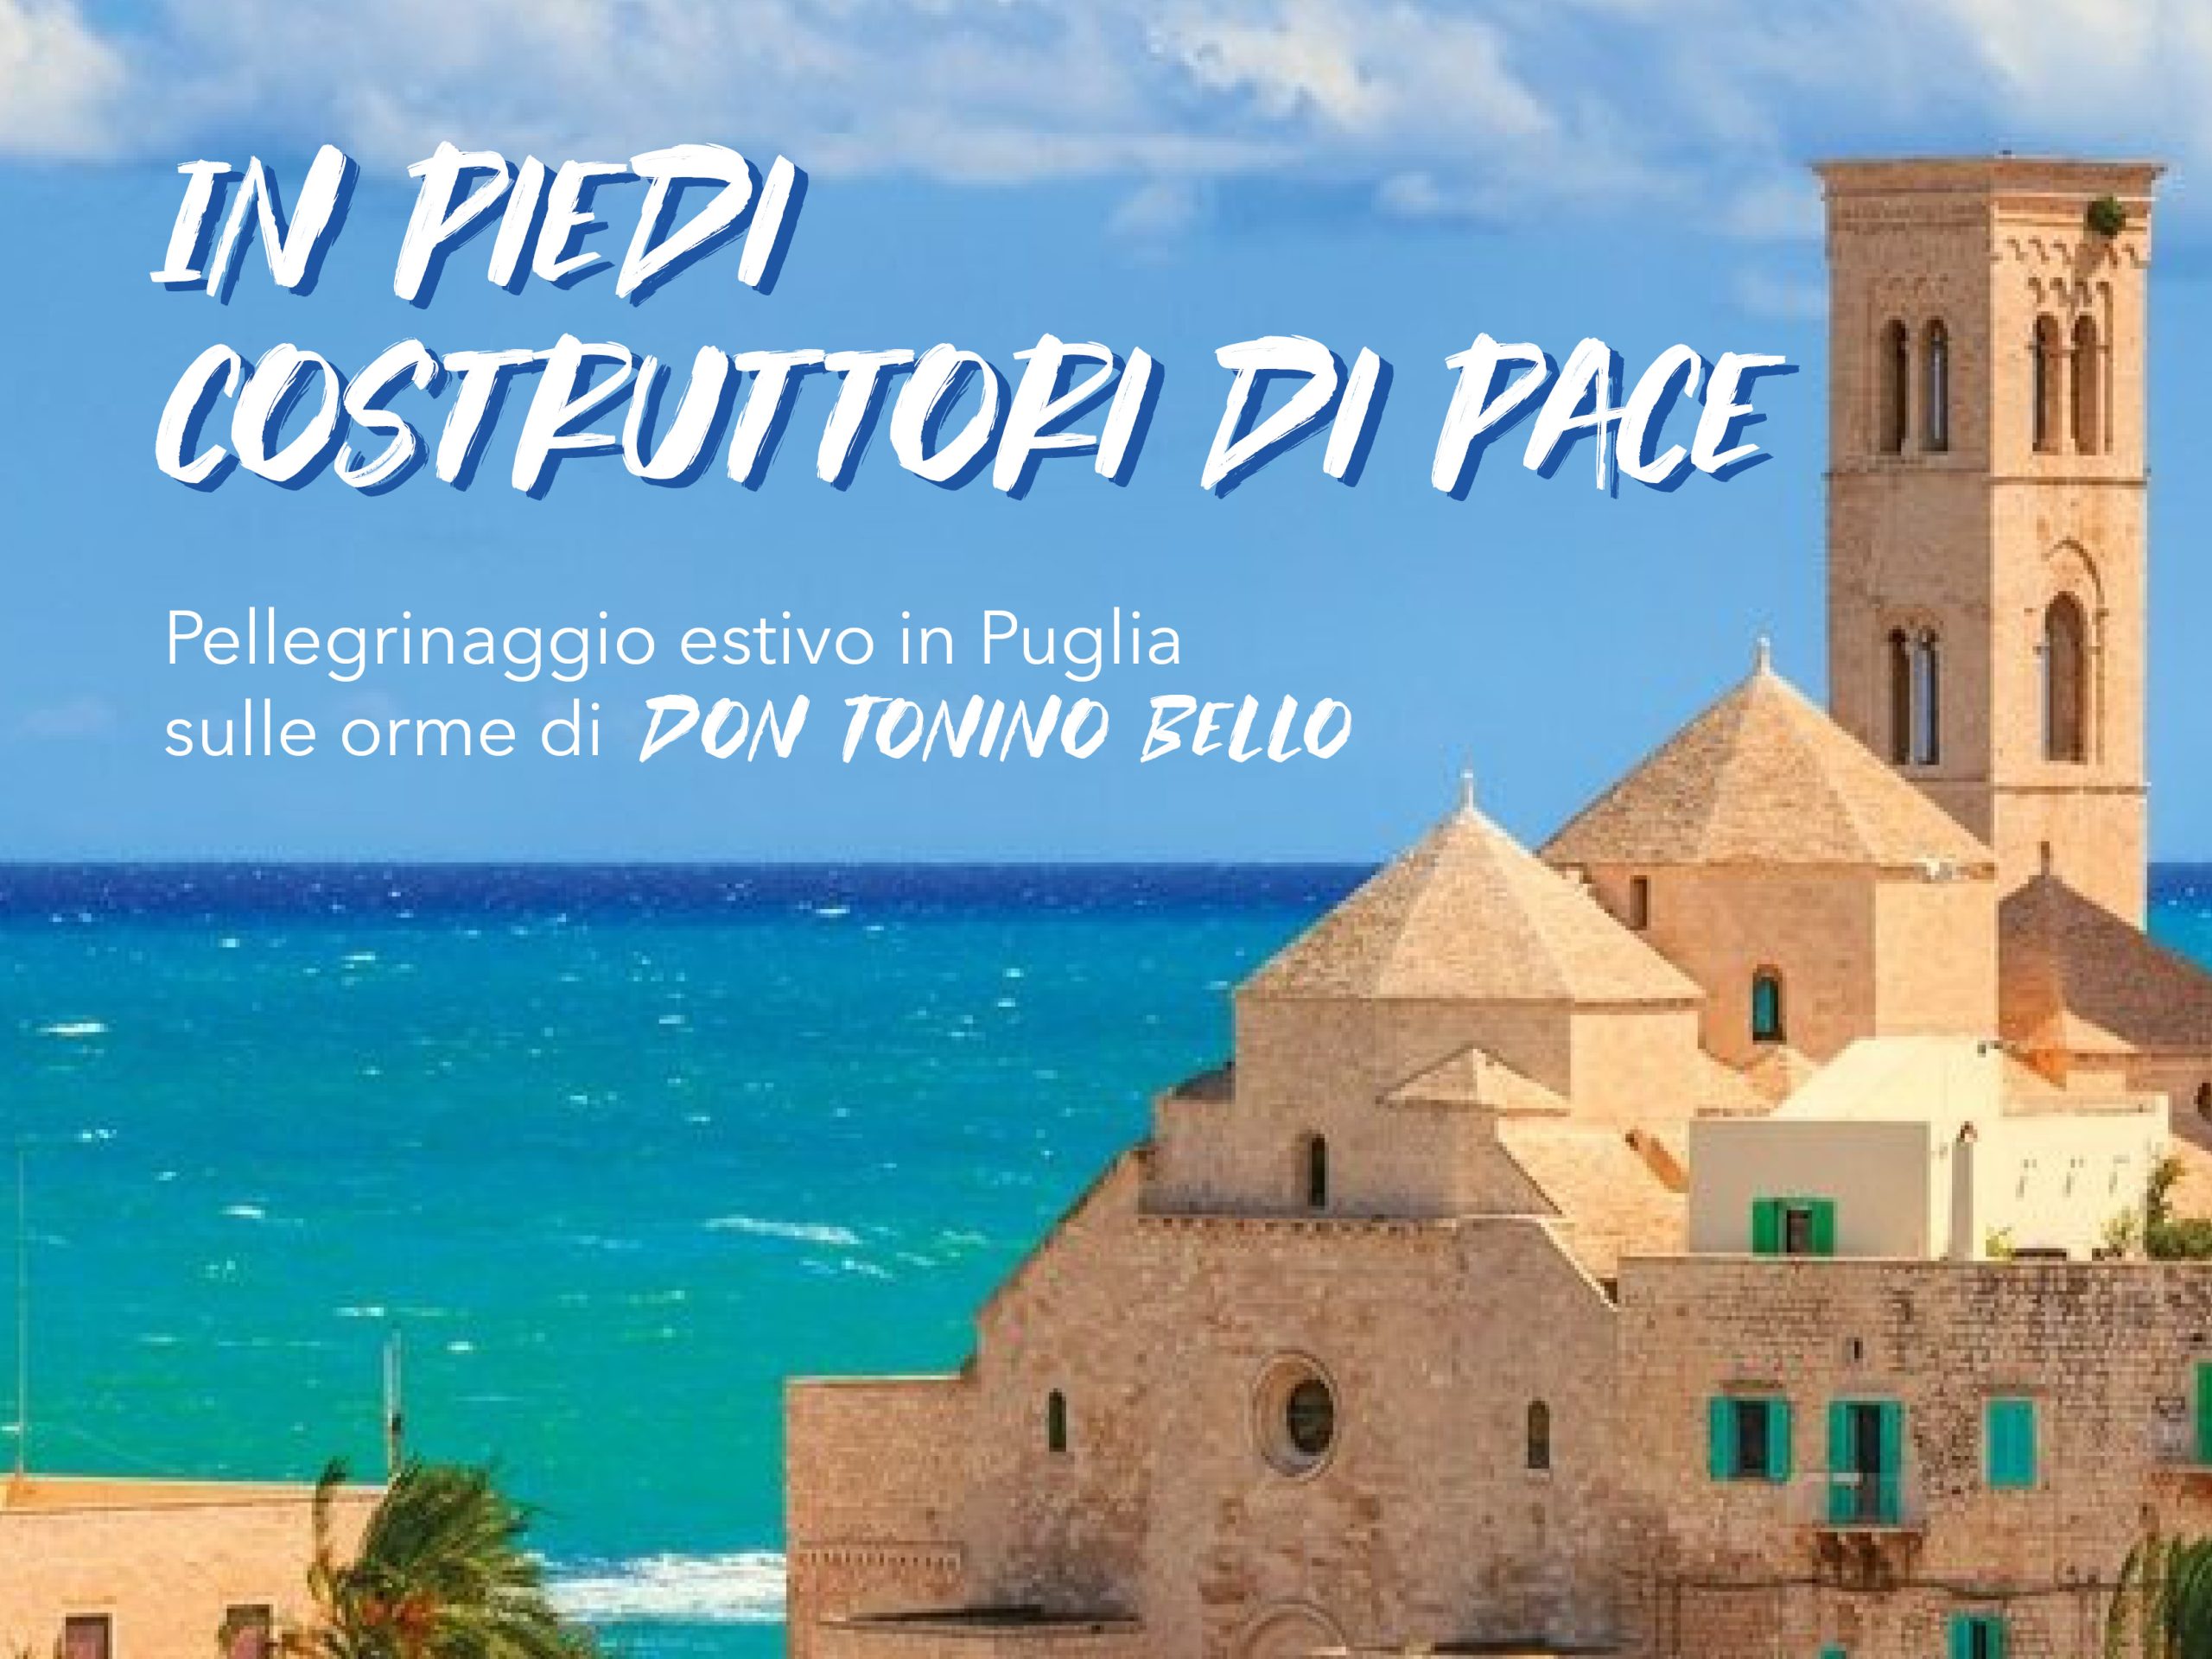 Pellegrinaggio estivo in Puglia - Sito